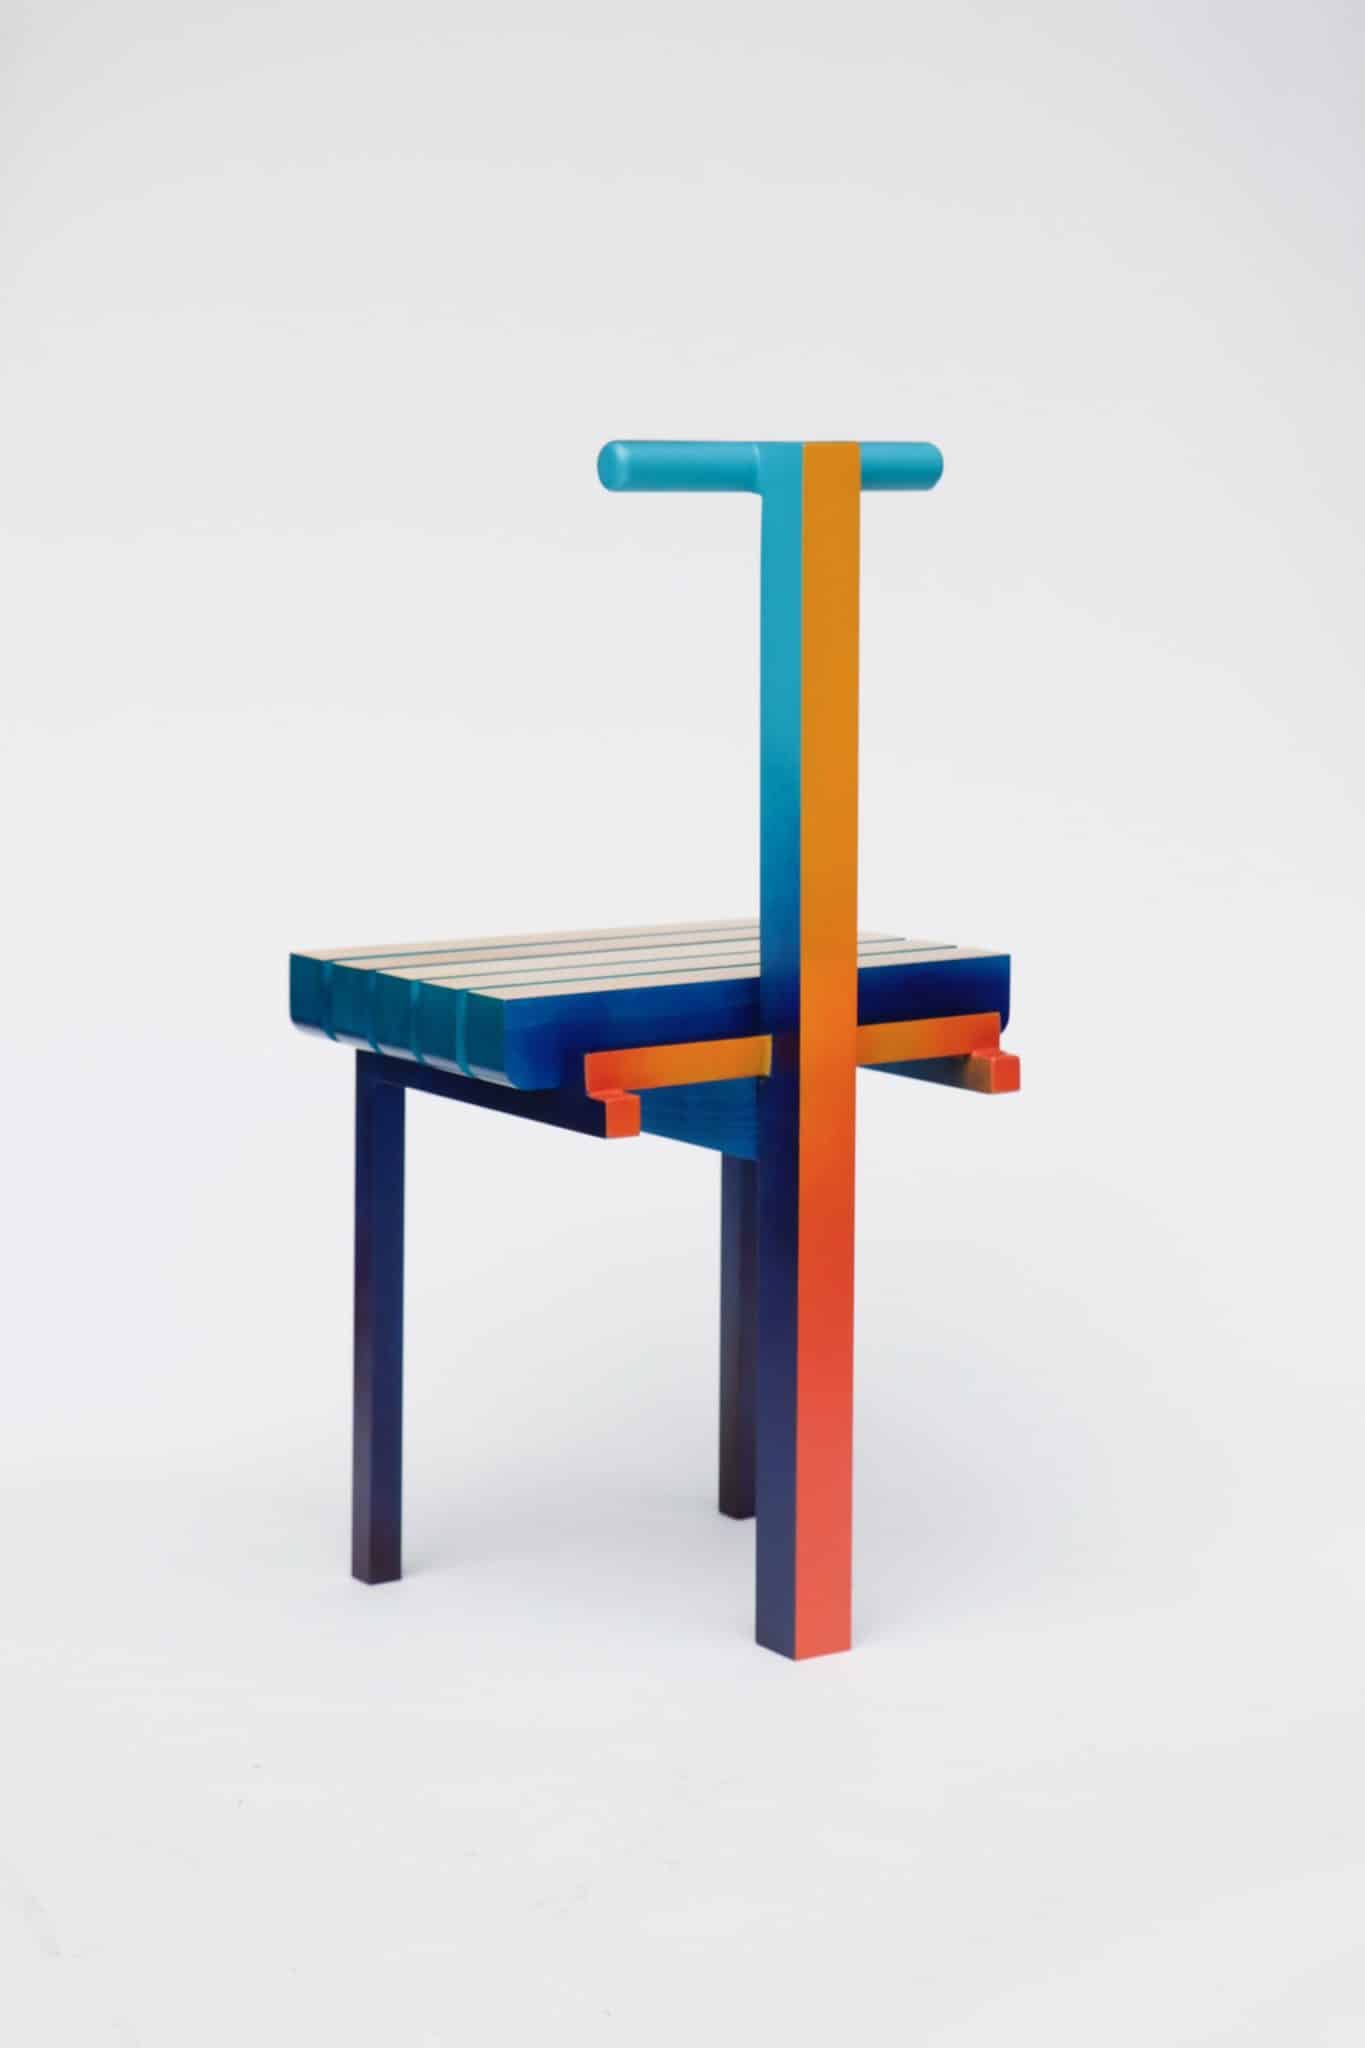 Malcolm Majer crée la Chair 3.2 à l'occasion d'Art Elysées pour Huskdesignblog, à Paris.